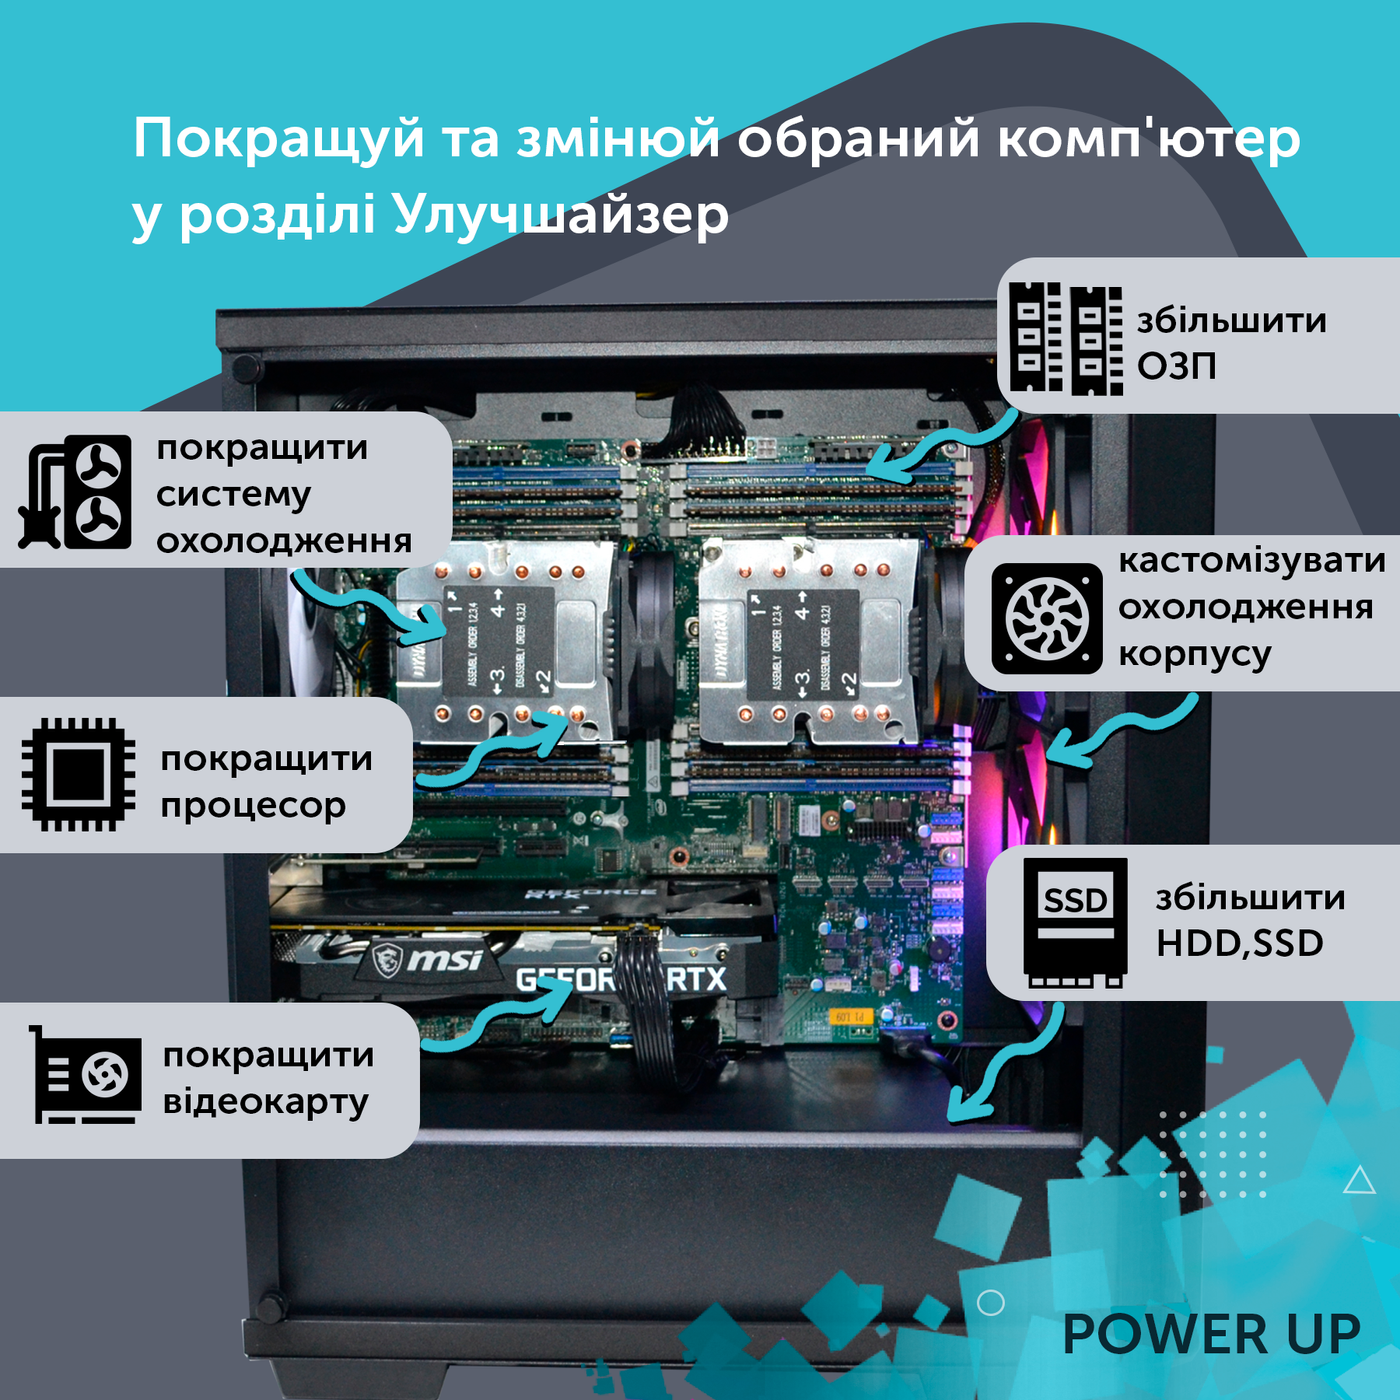 Сервер двопроцесорний TOWER PowerUp #85 AMD EPYC 7F52 x2/256 GB/SSD 512GB х2 Raid/Int Video